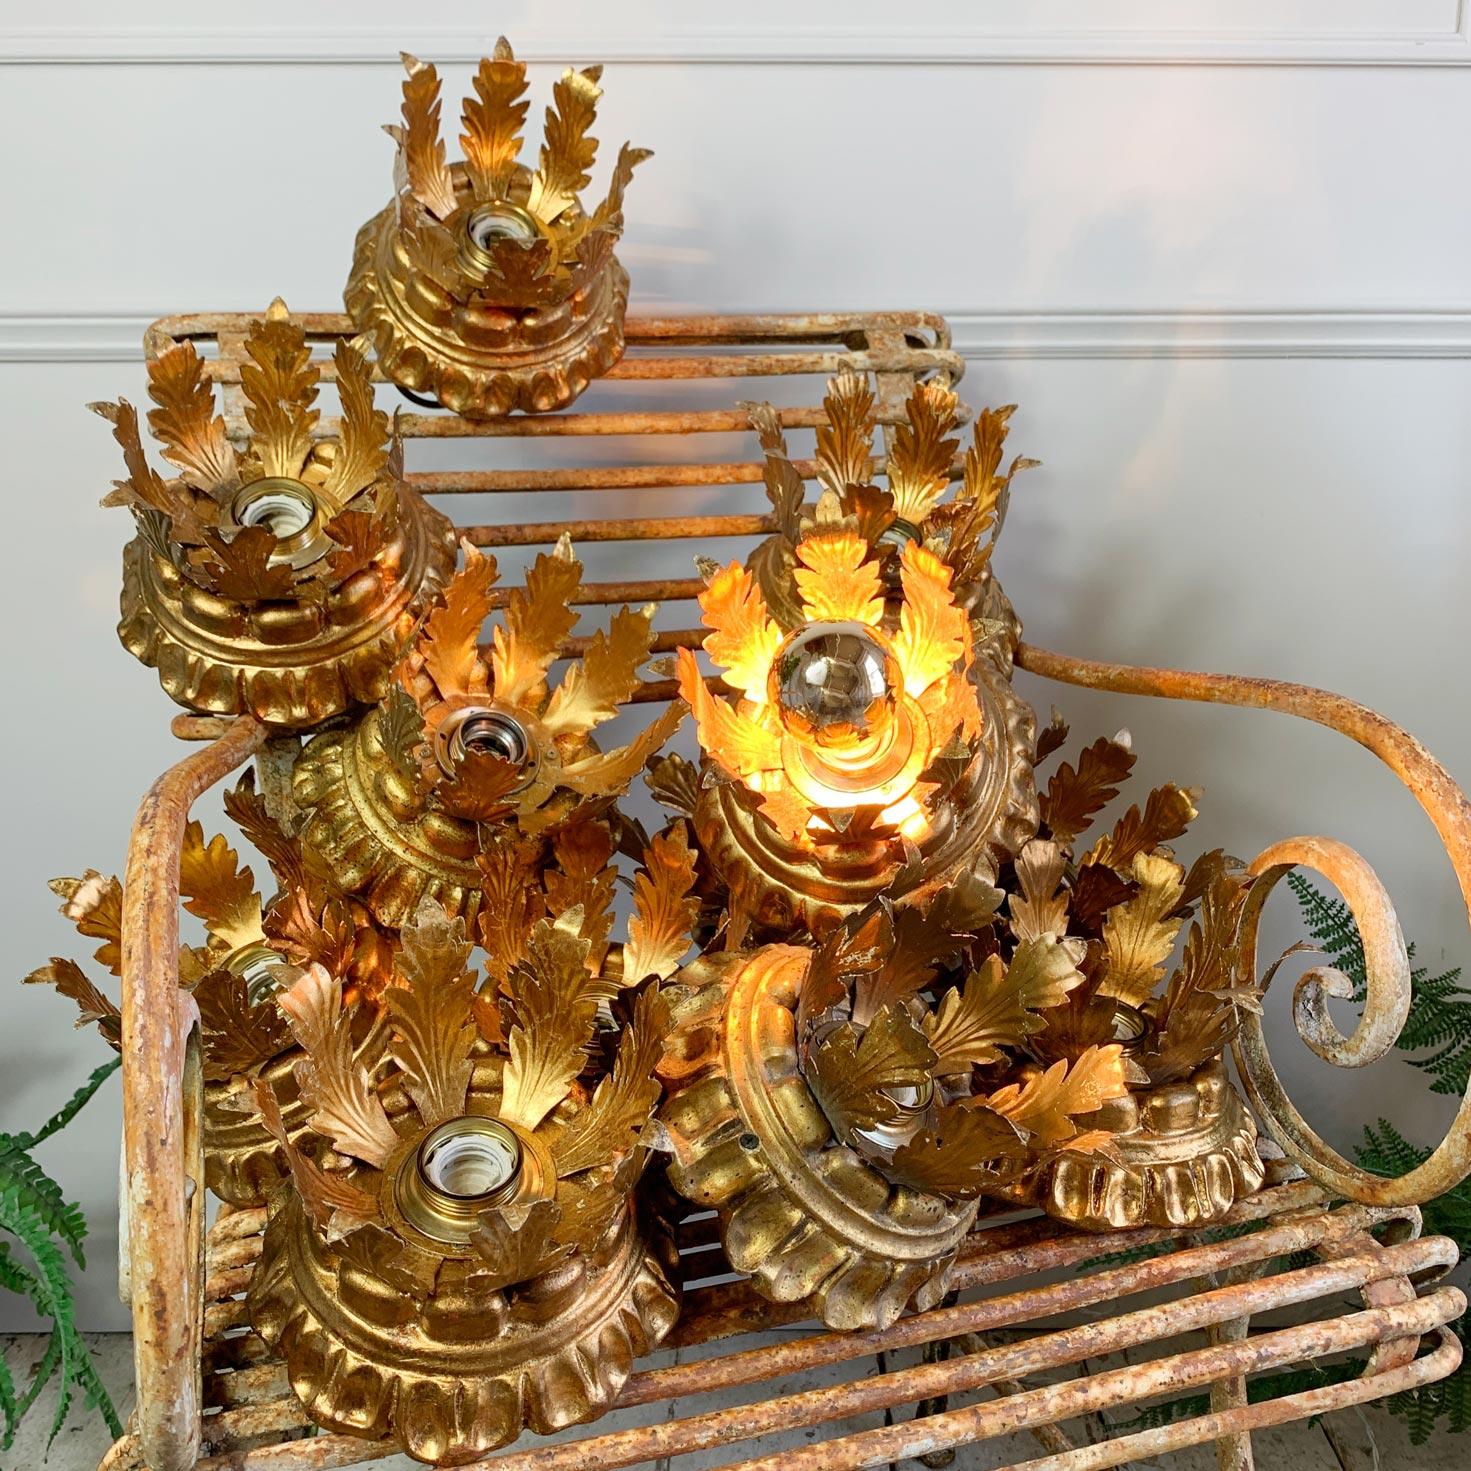 Magnifique plafonnier Florentine sculpté, métal doré sur bois, italien des années 1950.

Les lampes sont dotées d'une seule ampoule E27 (grande vis) et d'un crochet de suspension à l'arrière.

Le prix est pour une lumière

Mesures : Largeur 18cm x